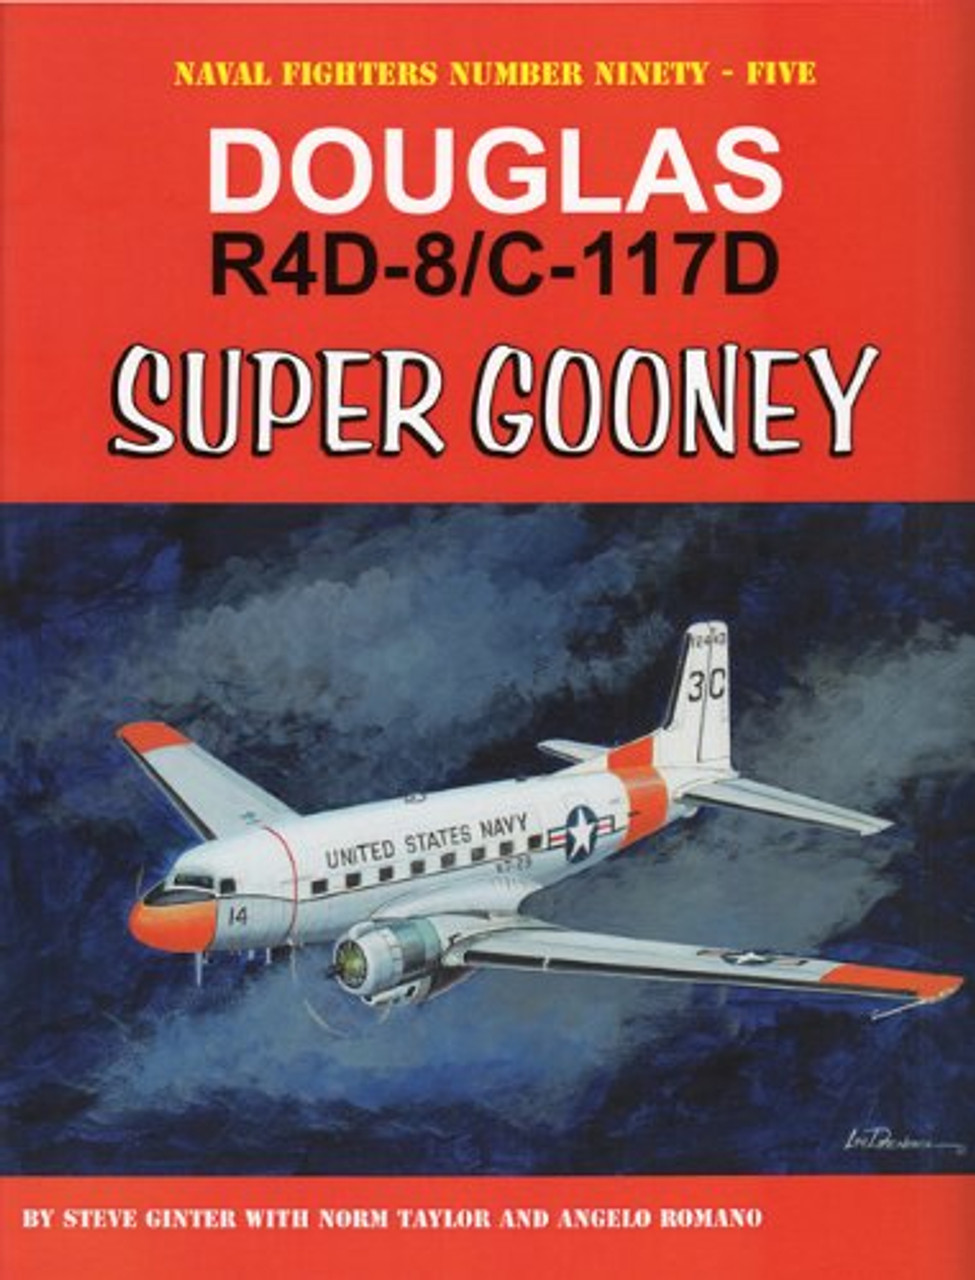 NF095 - Douglas R4D-8/C-117D Super Gooney